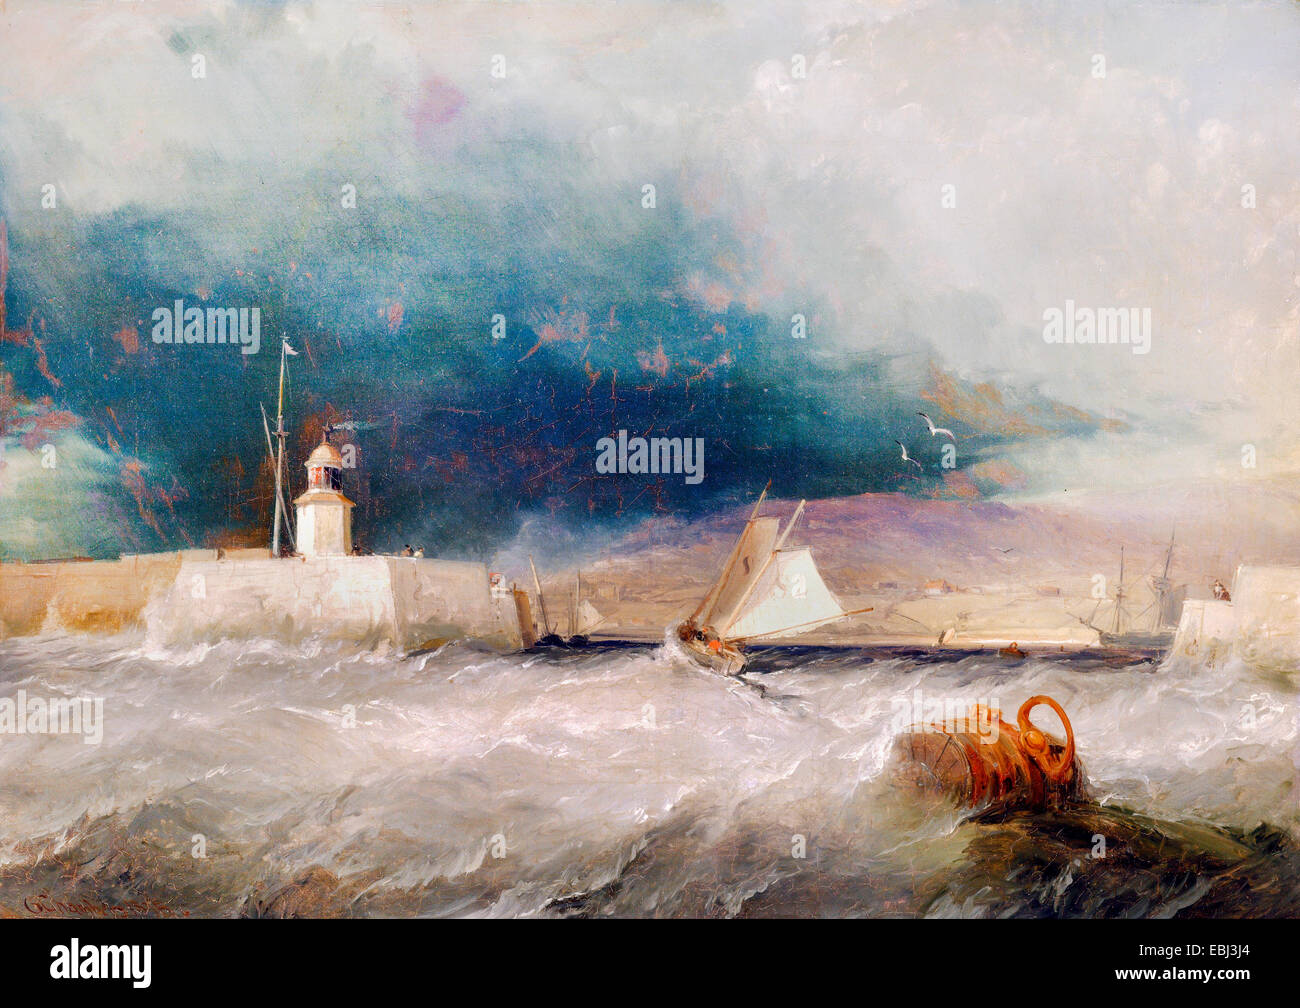 George Chambers, Anschluss an einem stürmischen Tag 1835-Öl auf Leinwand. Yale Center for British Art, New Haven, USA. Stockfoto